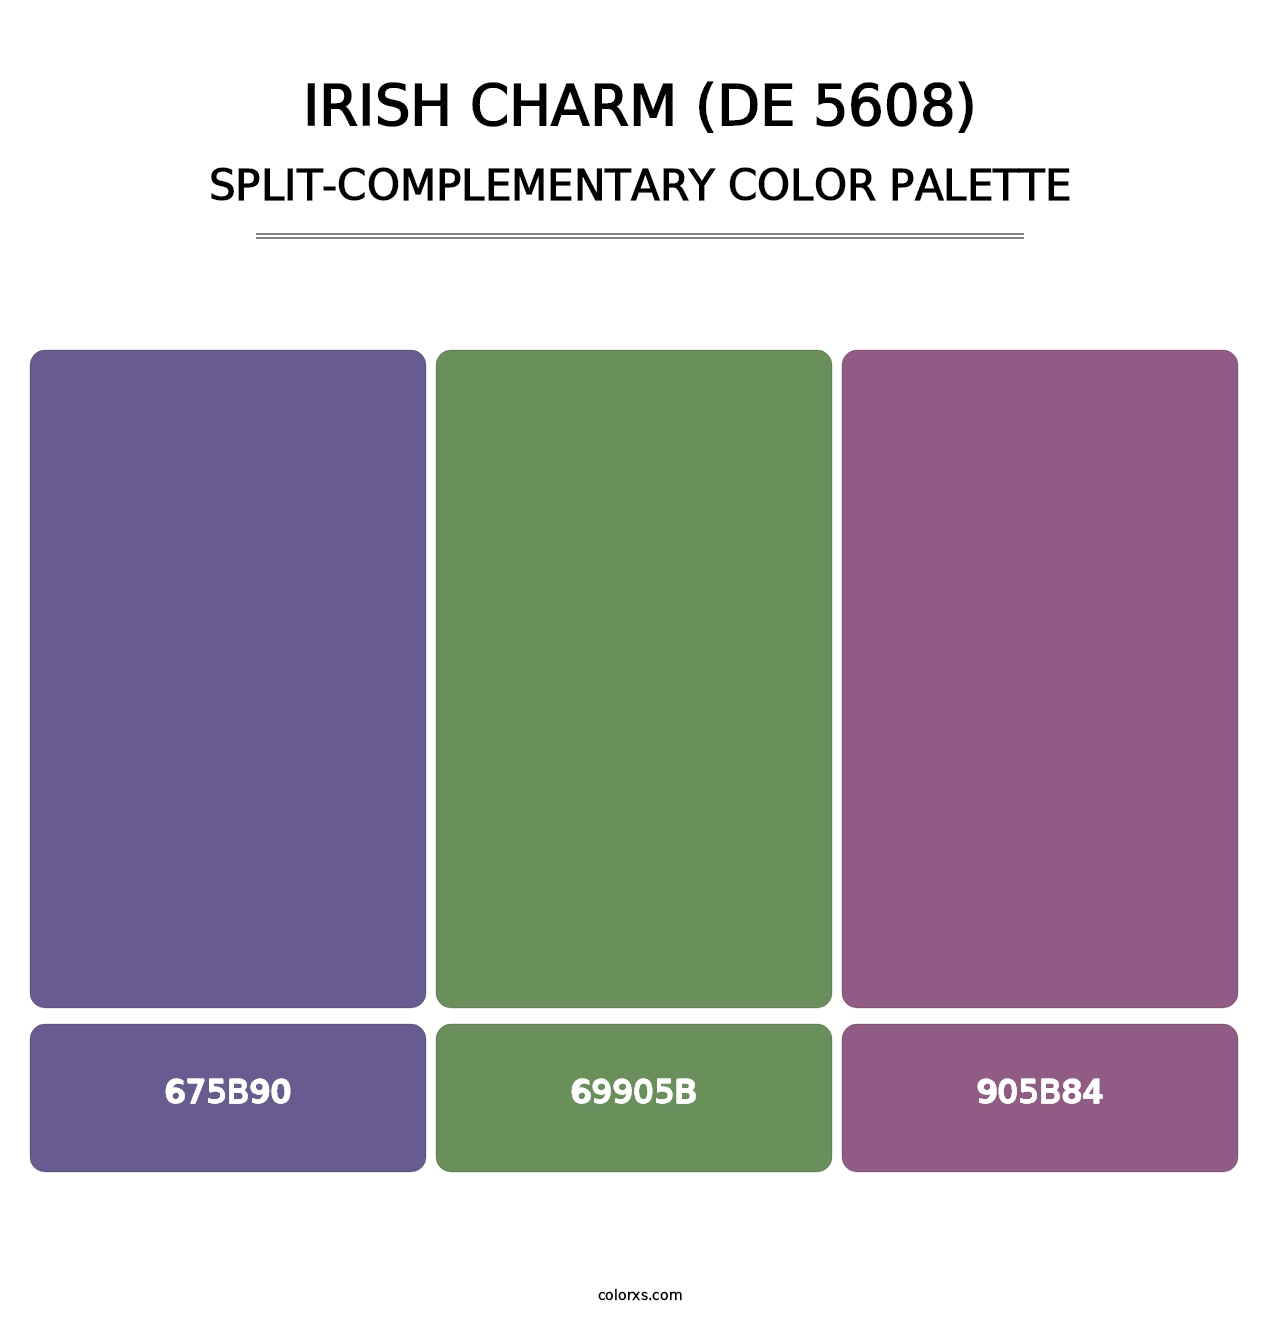 Irish Charm (DE 5608) - Split-Complementary Color Palette